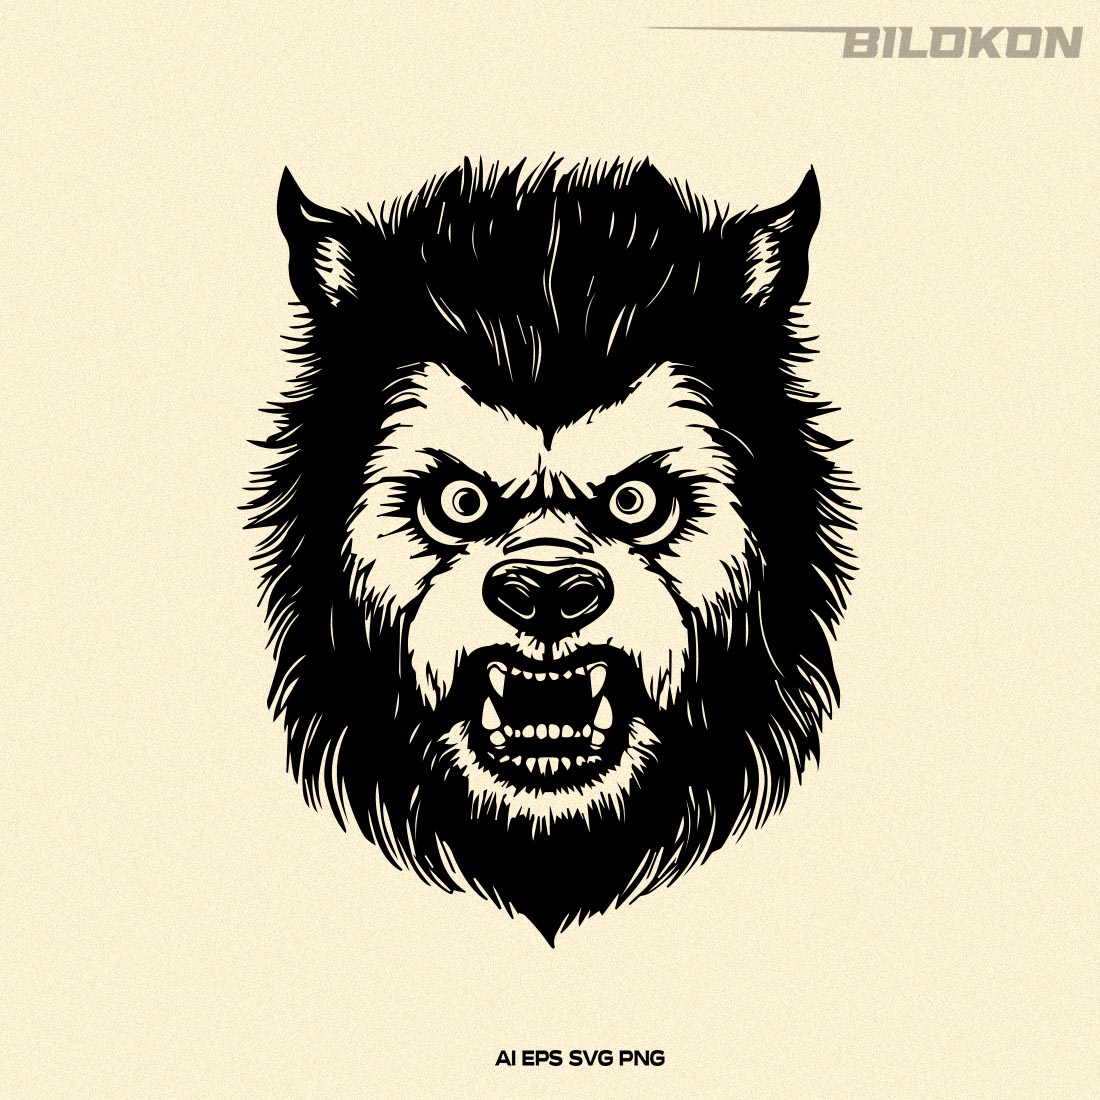 Werewolf head, Wolf man head, Halloween SVG Design preview image.